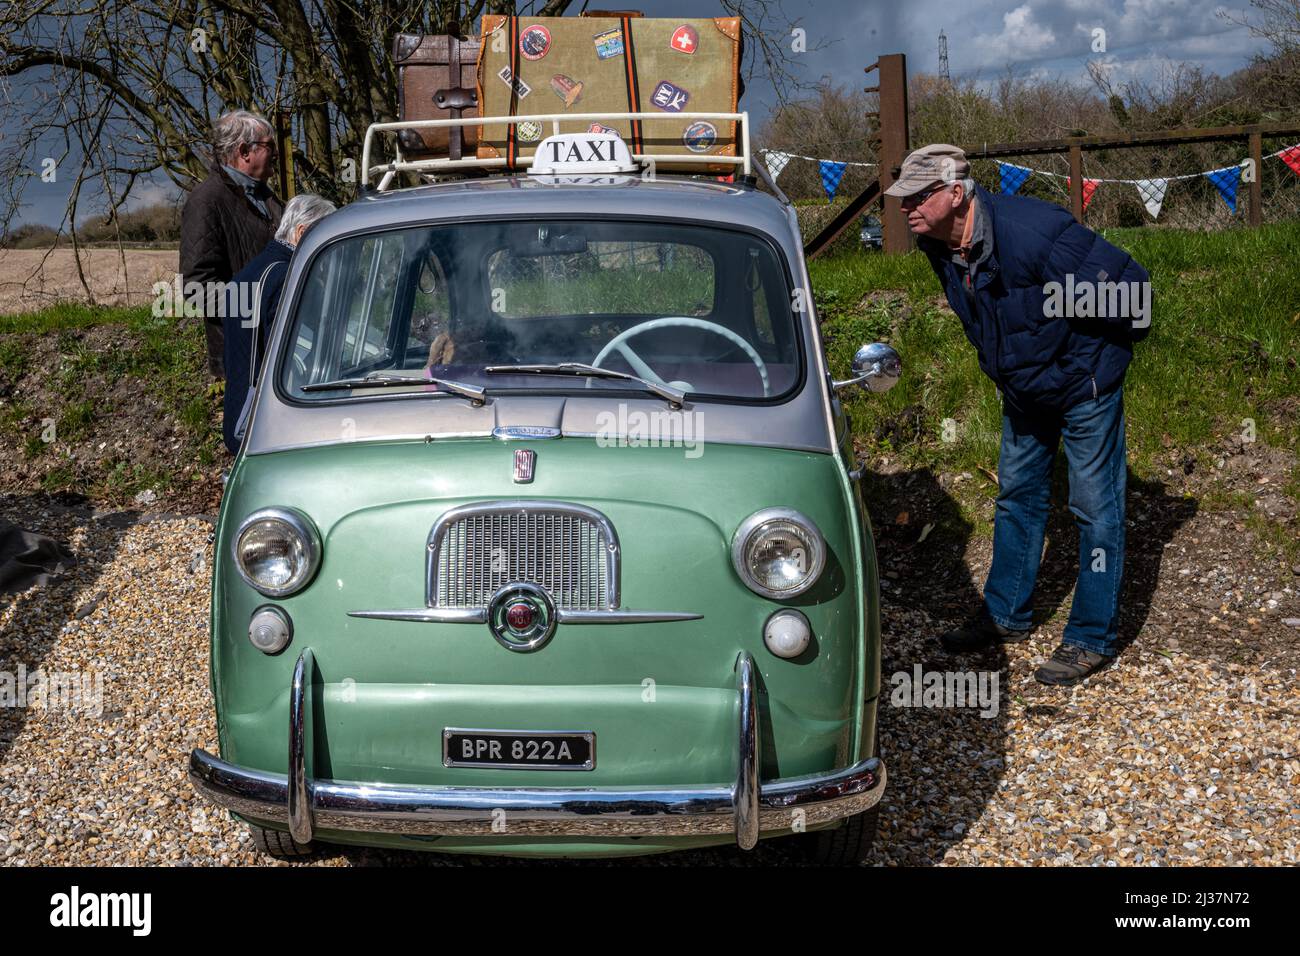 Kleines klassisches italienisches Taxi, das mit Gepäck auf einem Dachgepäckträger beladen ist, ein Fiat 600 Multipla aus dem Jahr 1963, Ropley, Hampshire, Großbritannien Stockfoto